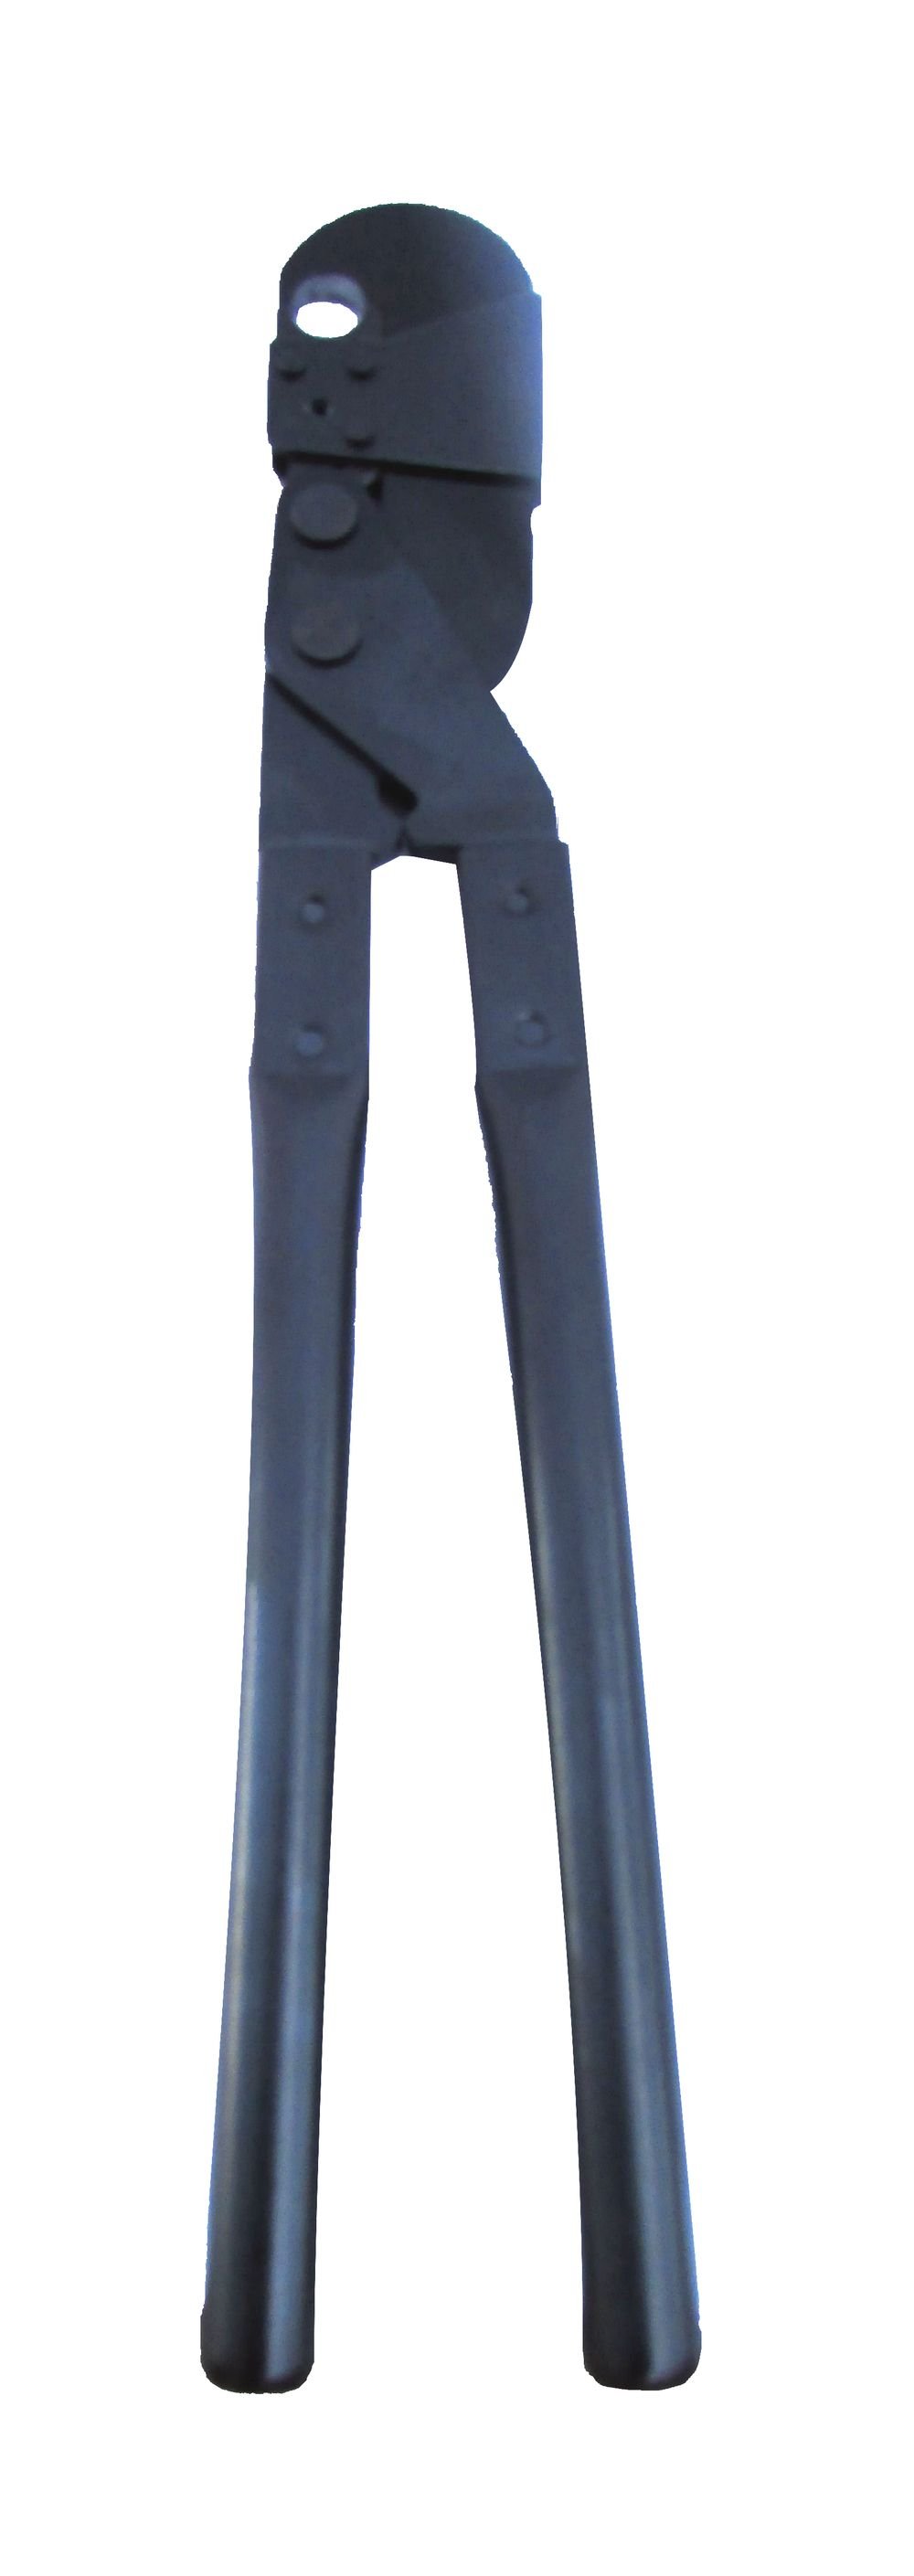 Buteline BFR16 16mm Standard Clamp Tool